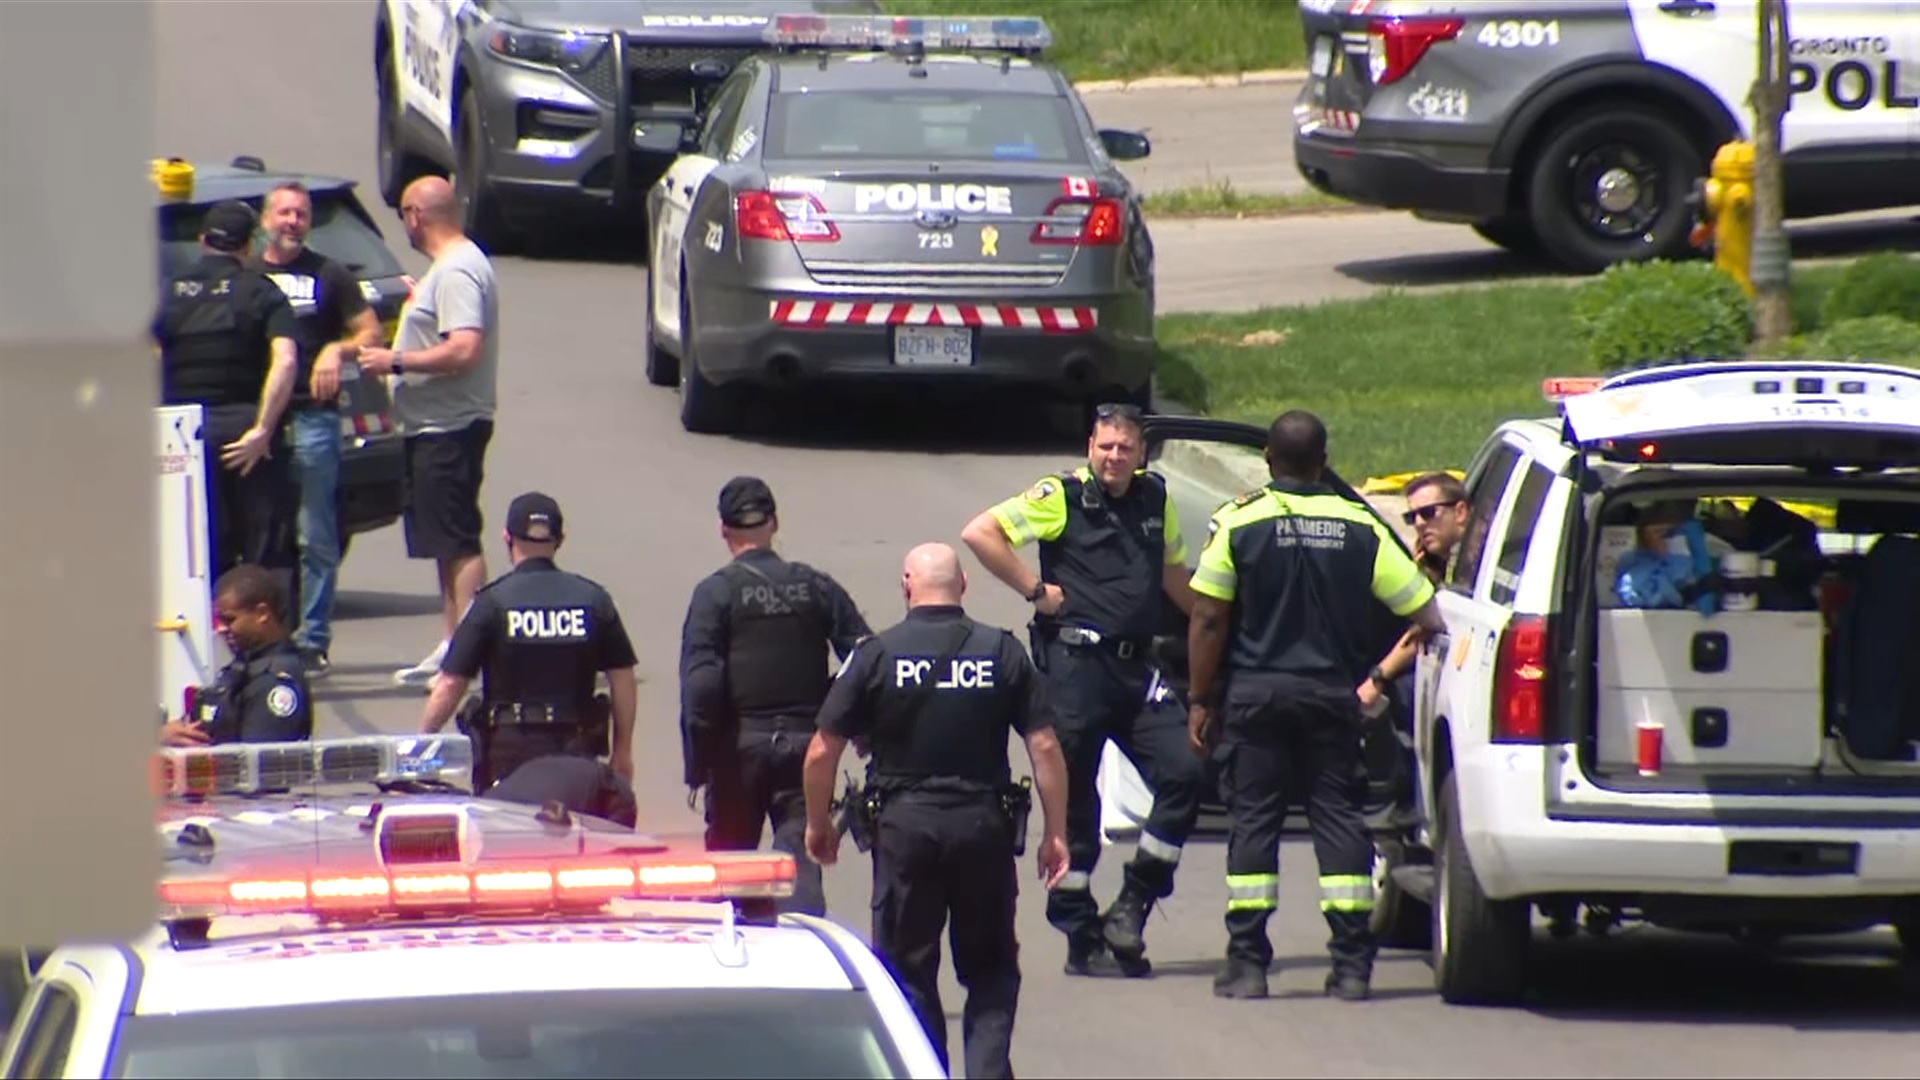 کشته شدن مردی که باعث تعطیلی 4 مدرسه در تورنتو شد